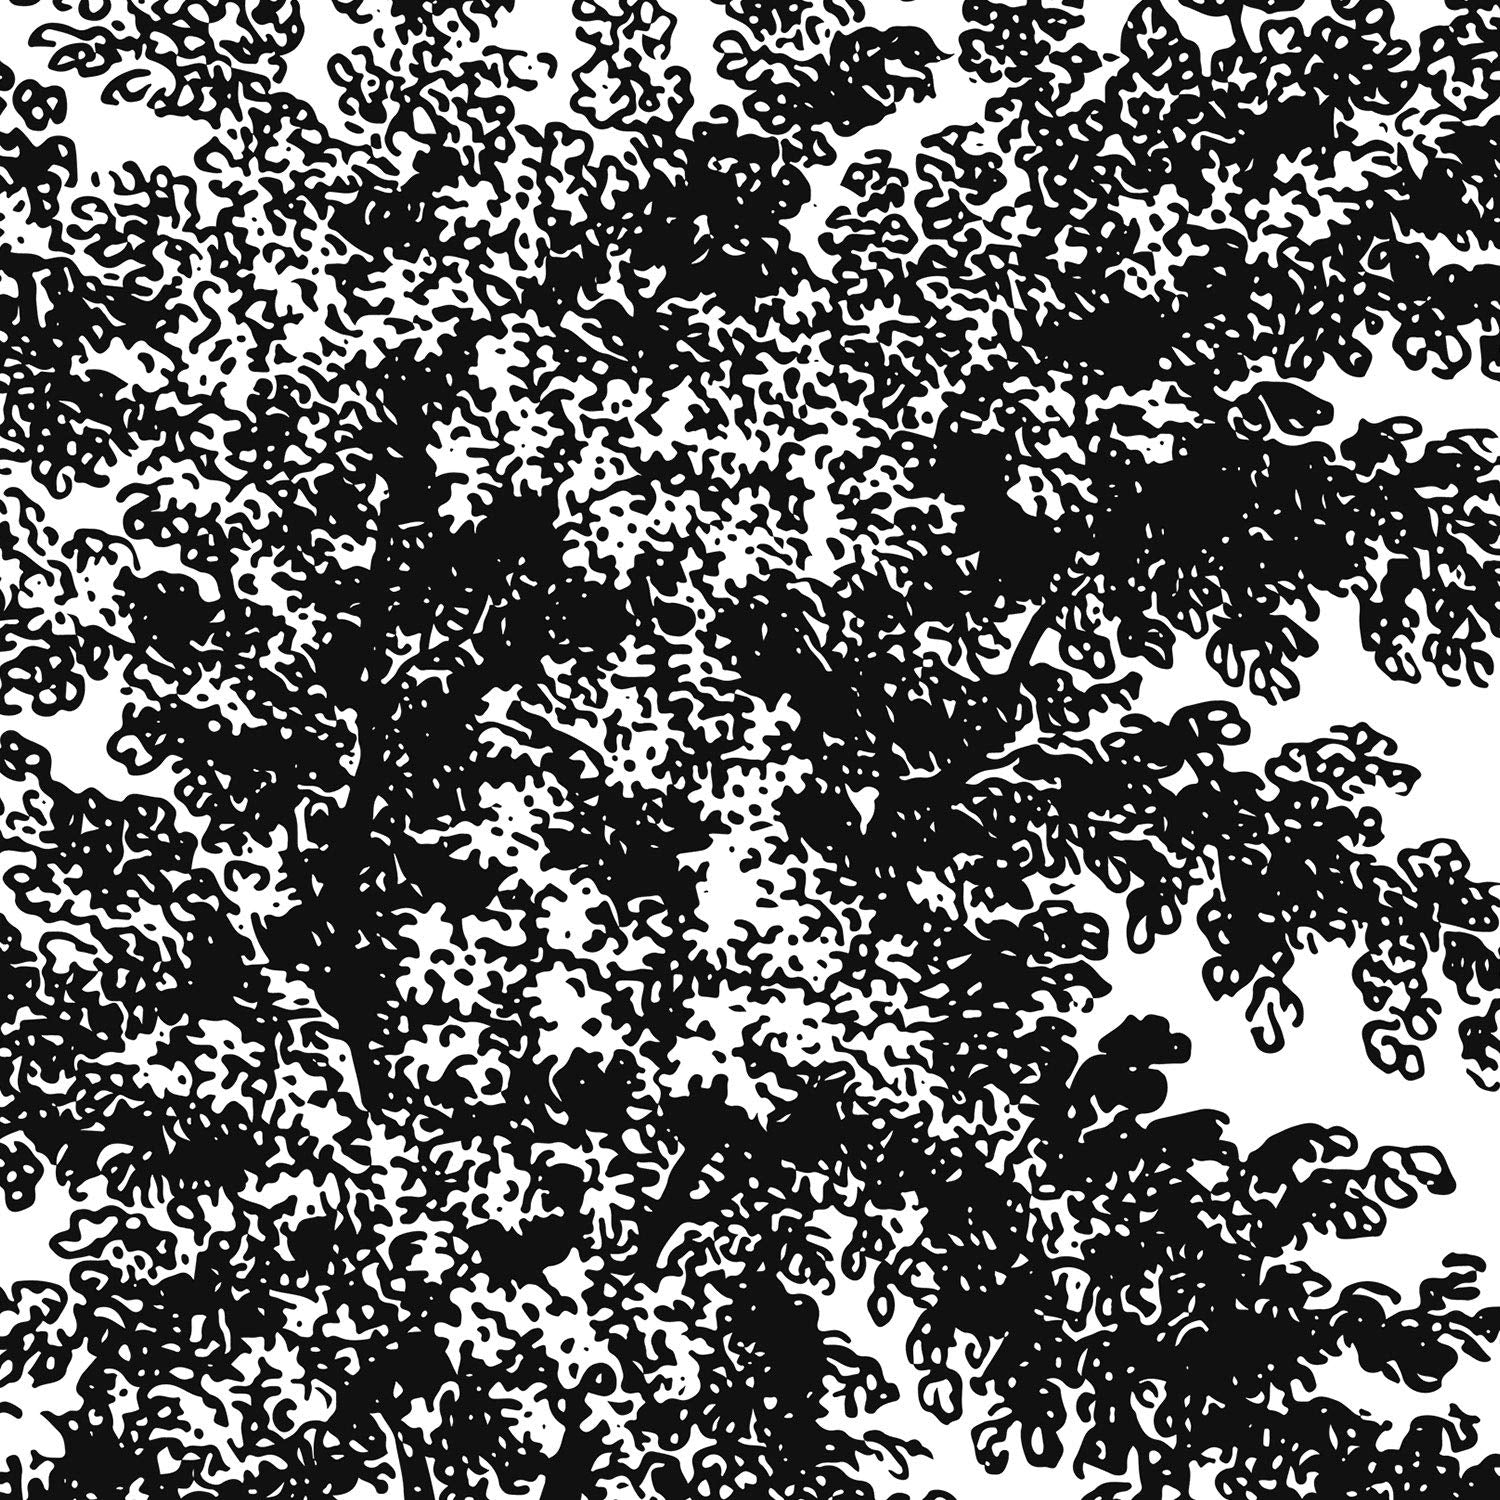 Set de cuatro láminas de arboles. Arboles frondosos en cm, fondo blanco .-Artwork-Nacnic-Nacnic Estudio SL